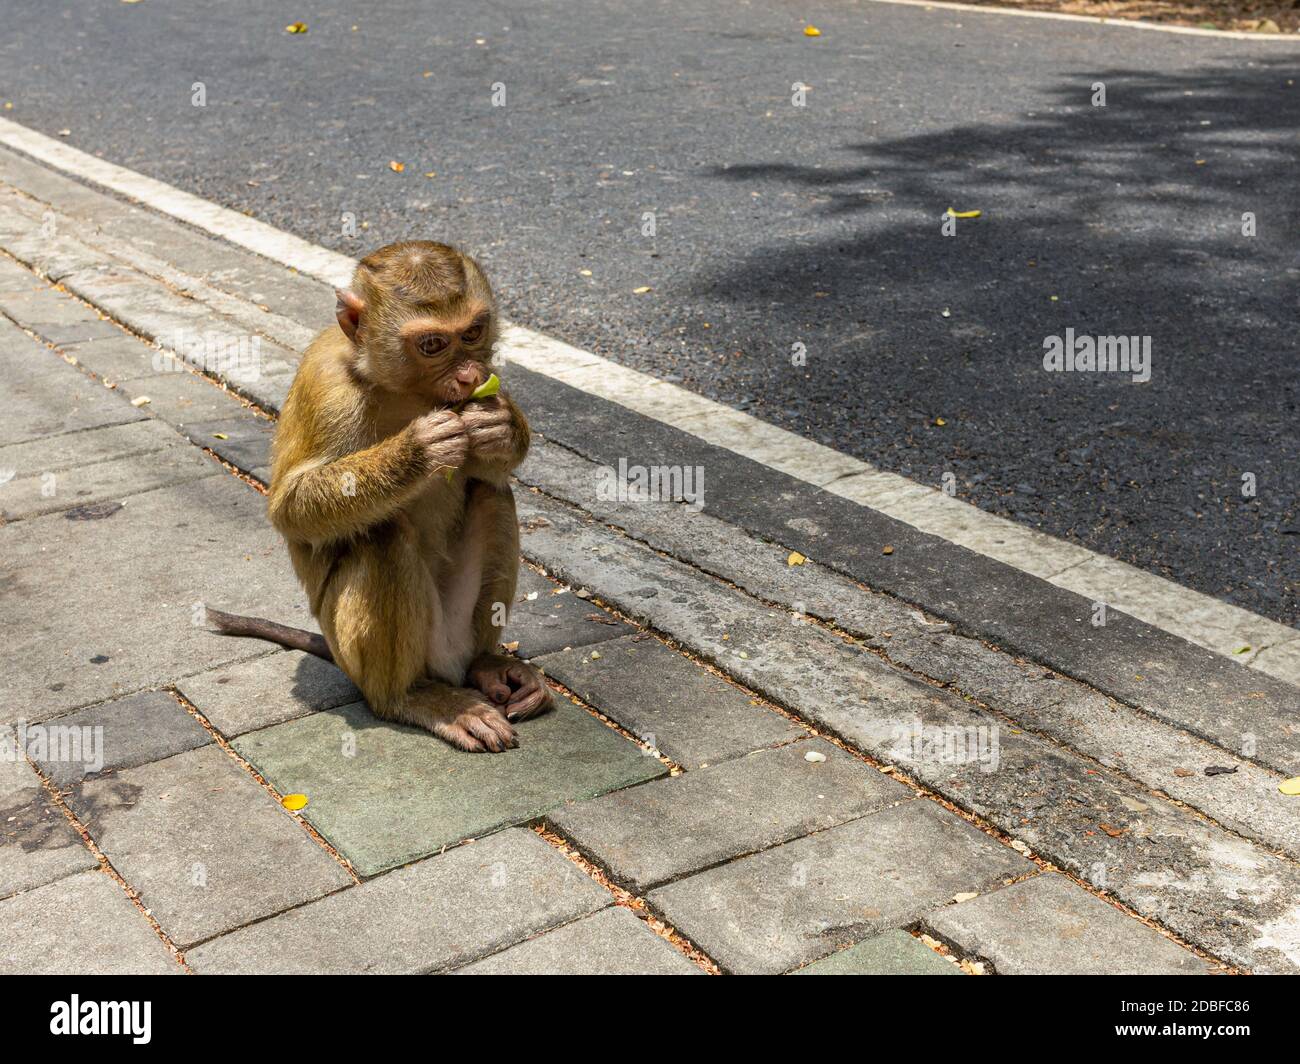 mono pequeño comiendo plátano en la carretera Fotografía de stock - Alamy